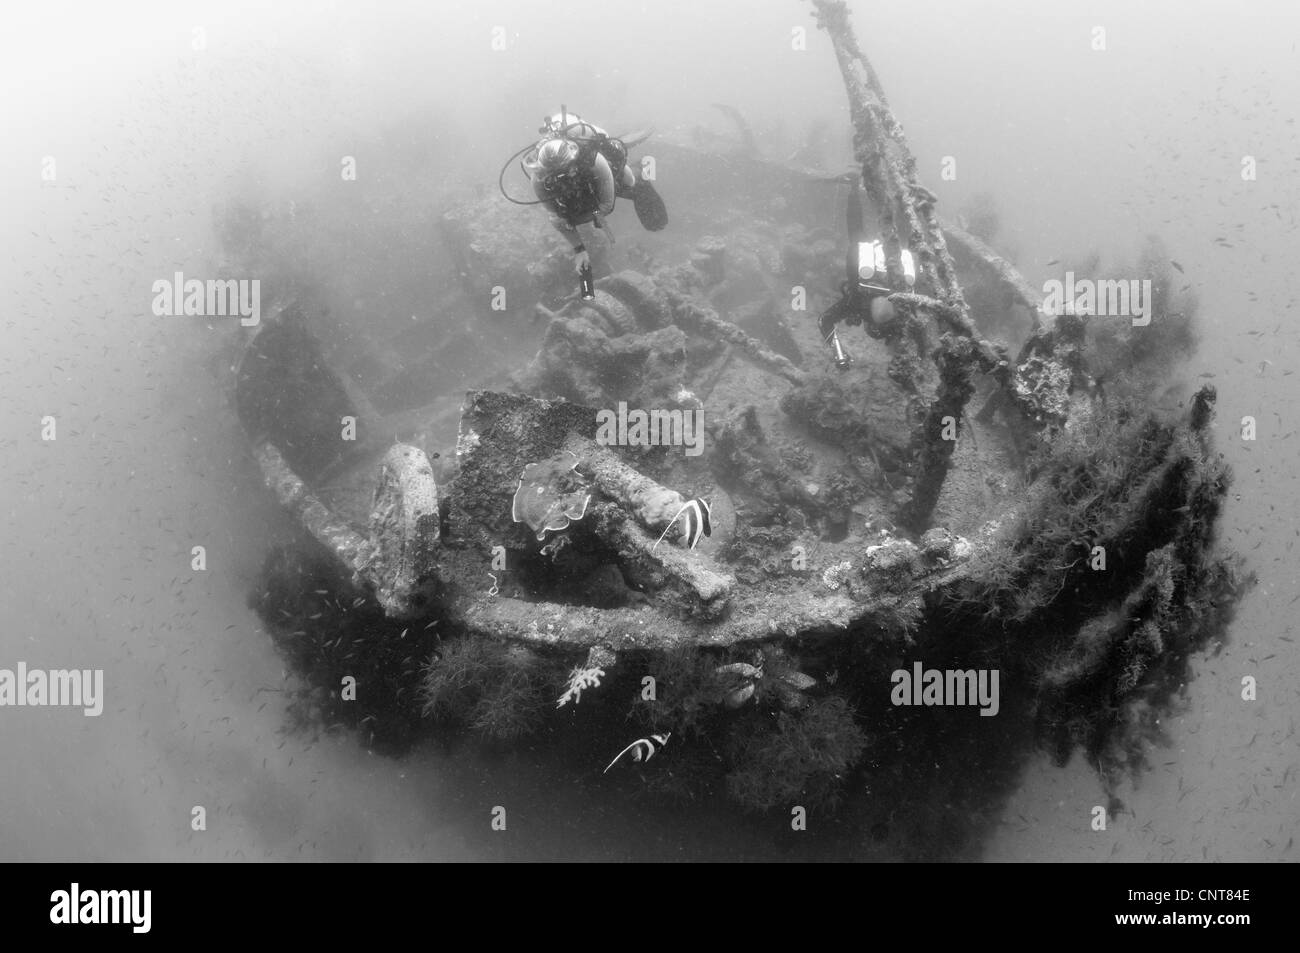 Les plongeurs d'explorer l'épave d'un navire de guerre japonais Maru coulé pendant la Seconde Guerre mondiale, Morovo Lagoon, Îles Salomon. Banque D'Images